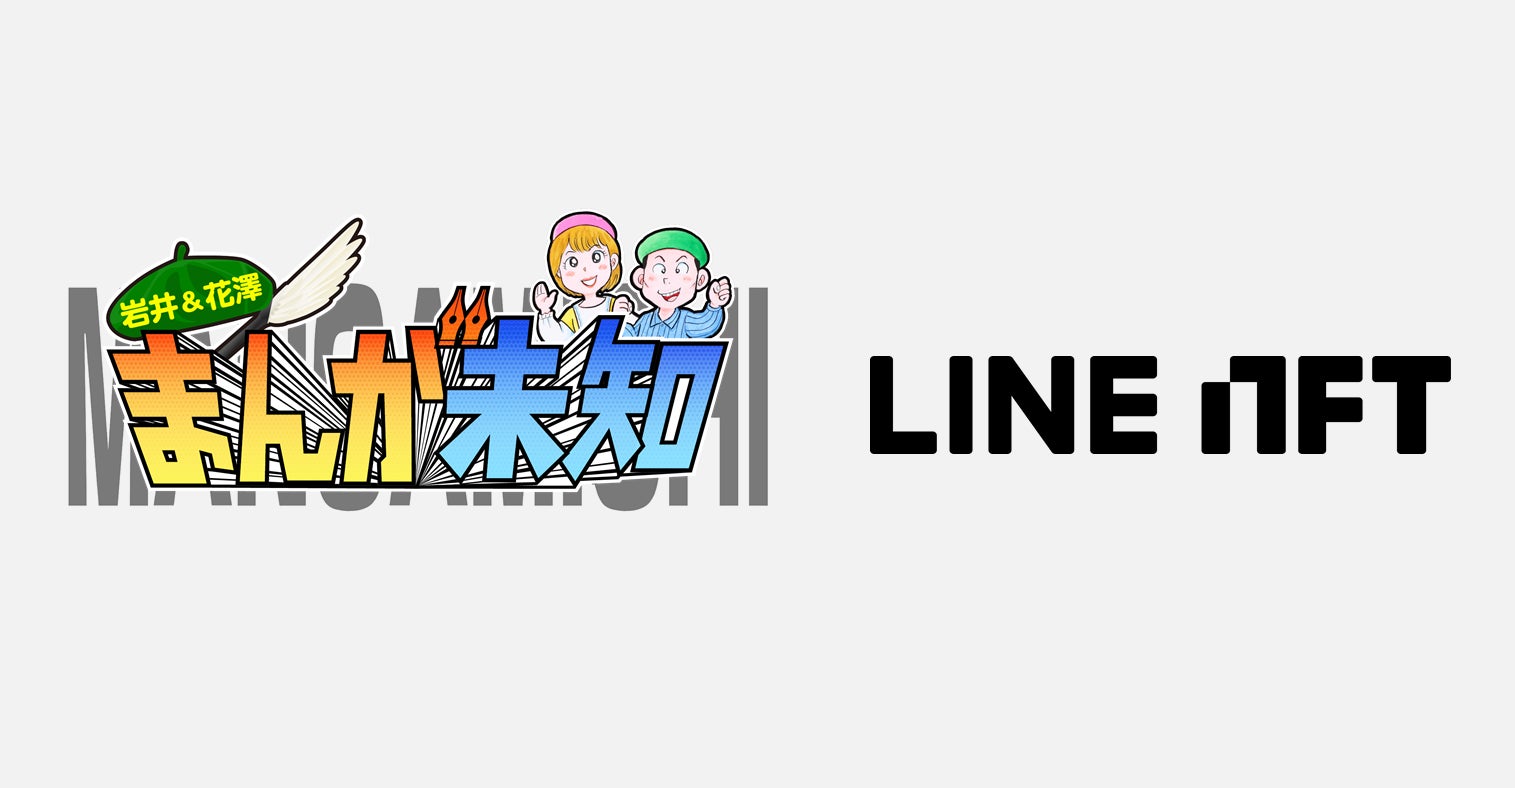 テレビ朝日、「LINE NFT」において「まんが未知」特別番組とコラボをしたオリジナルイラストNFTを8月17日より販売開始